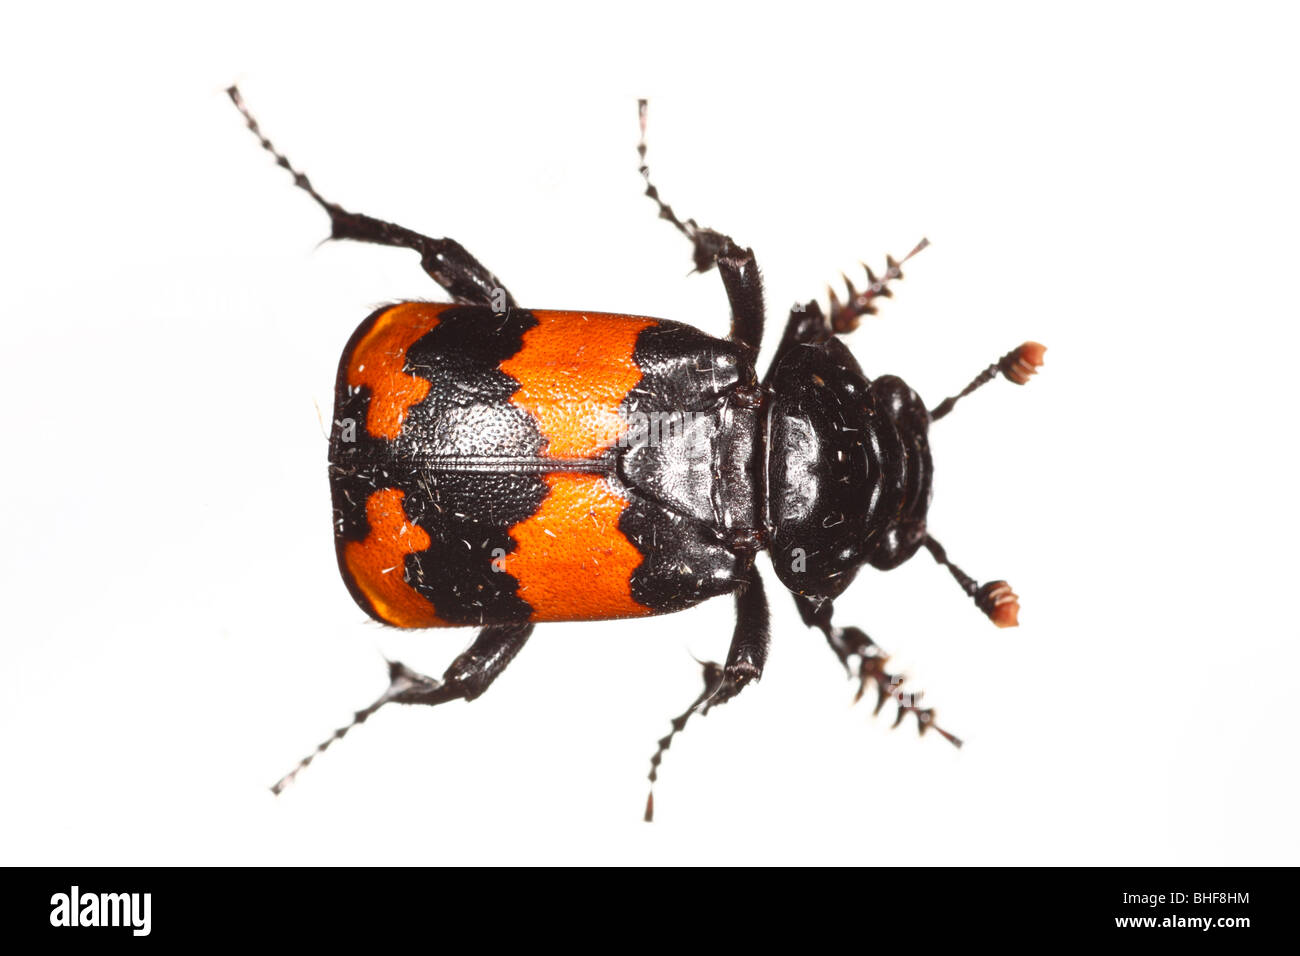 Seppellire o Sexton beetle (Nicrophorus ricercatore). Insetti vivi fotografati contro uno sfondo bianco su un portatile studio. Foto Stock